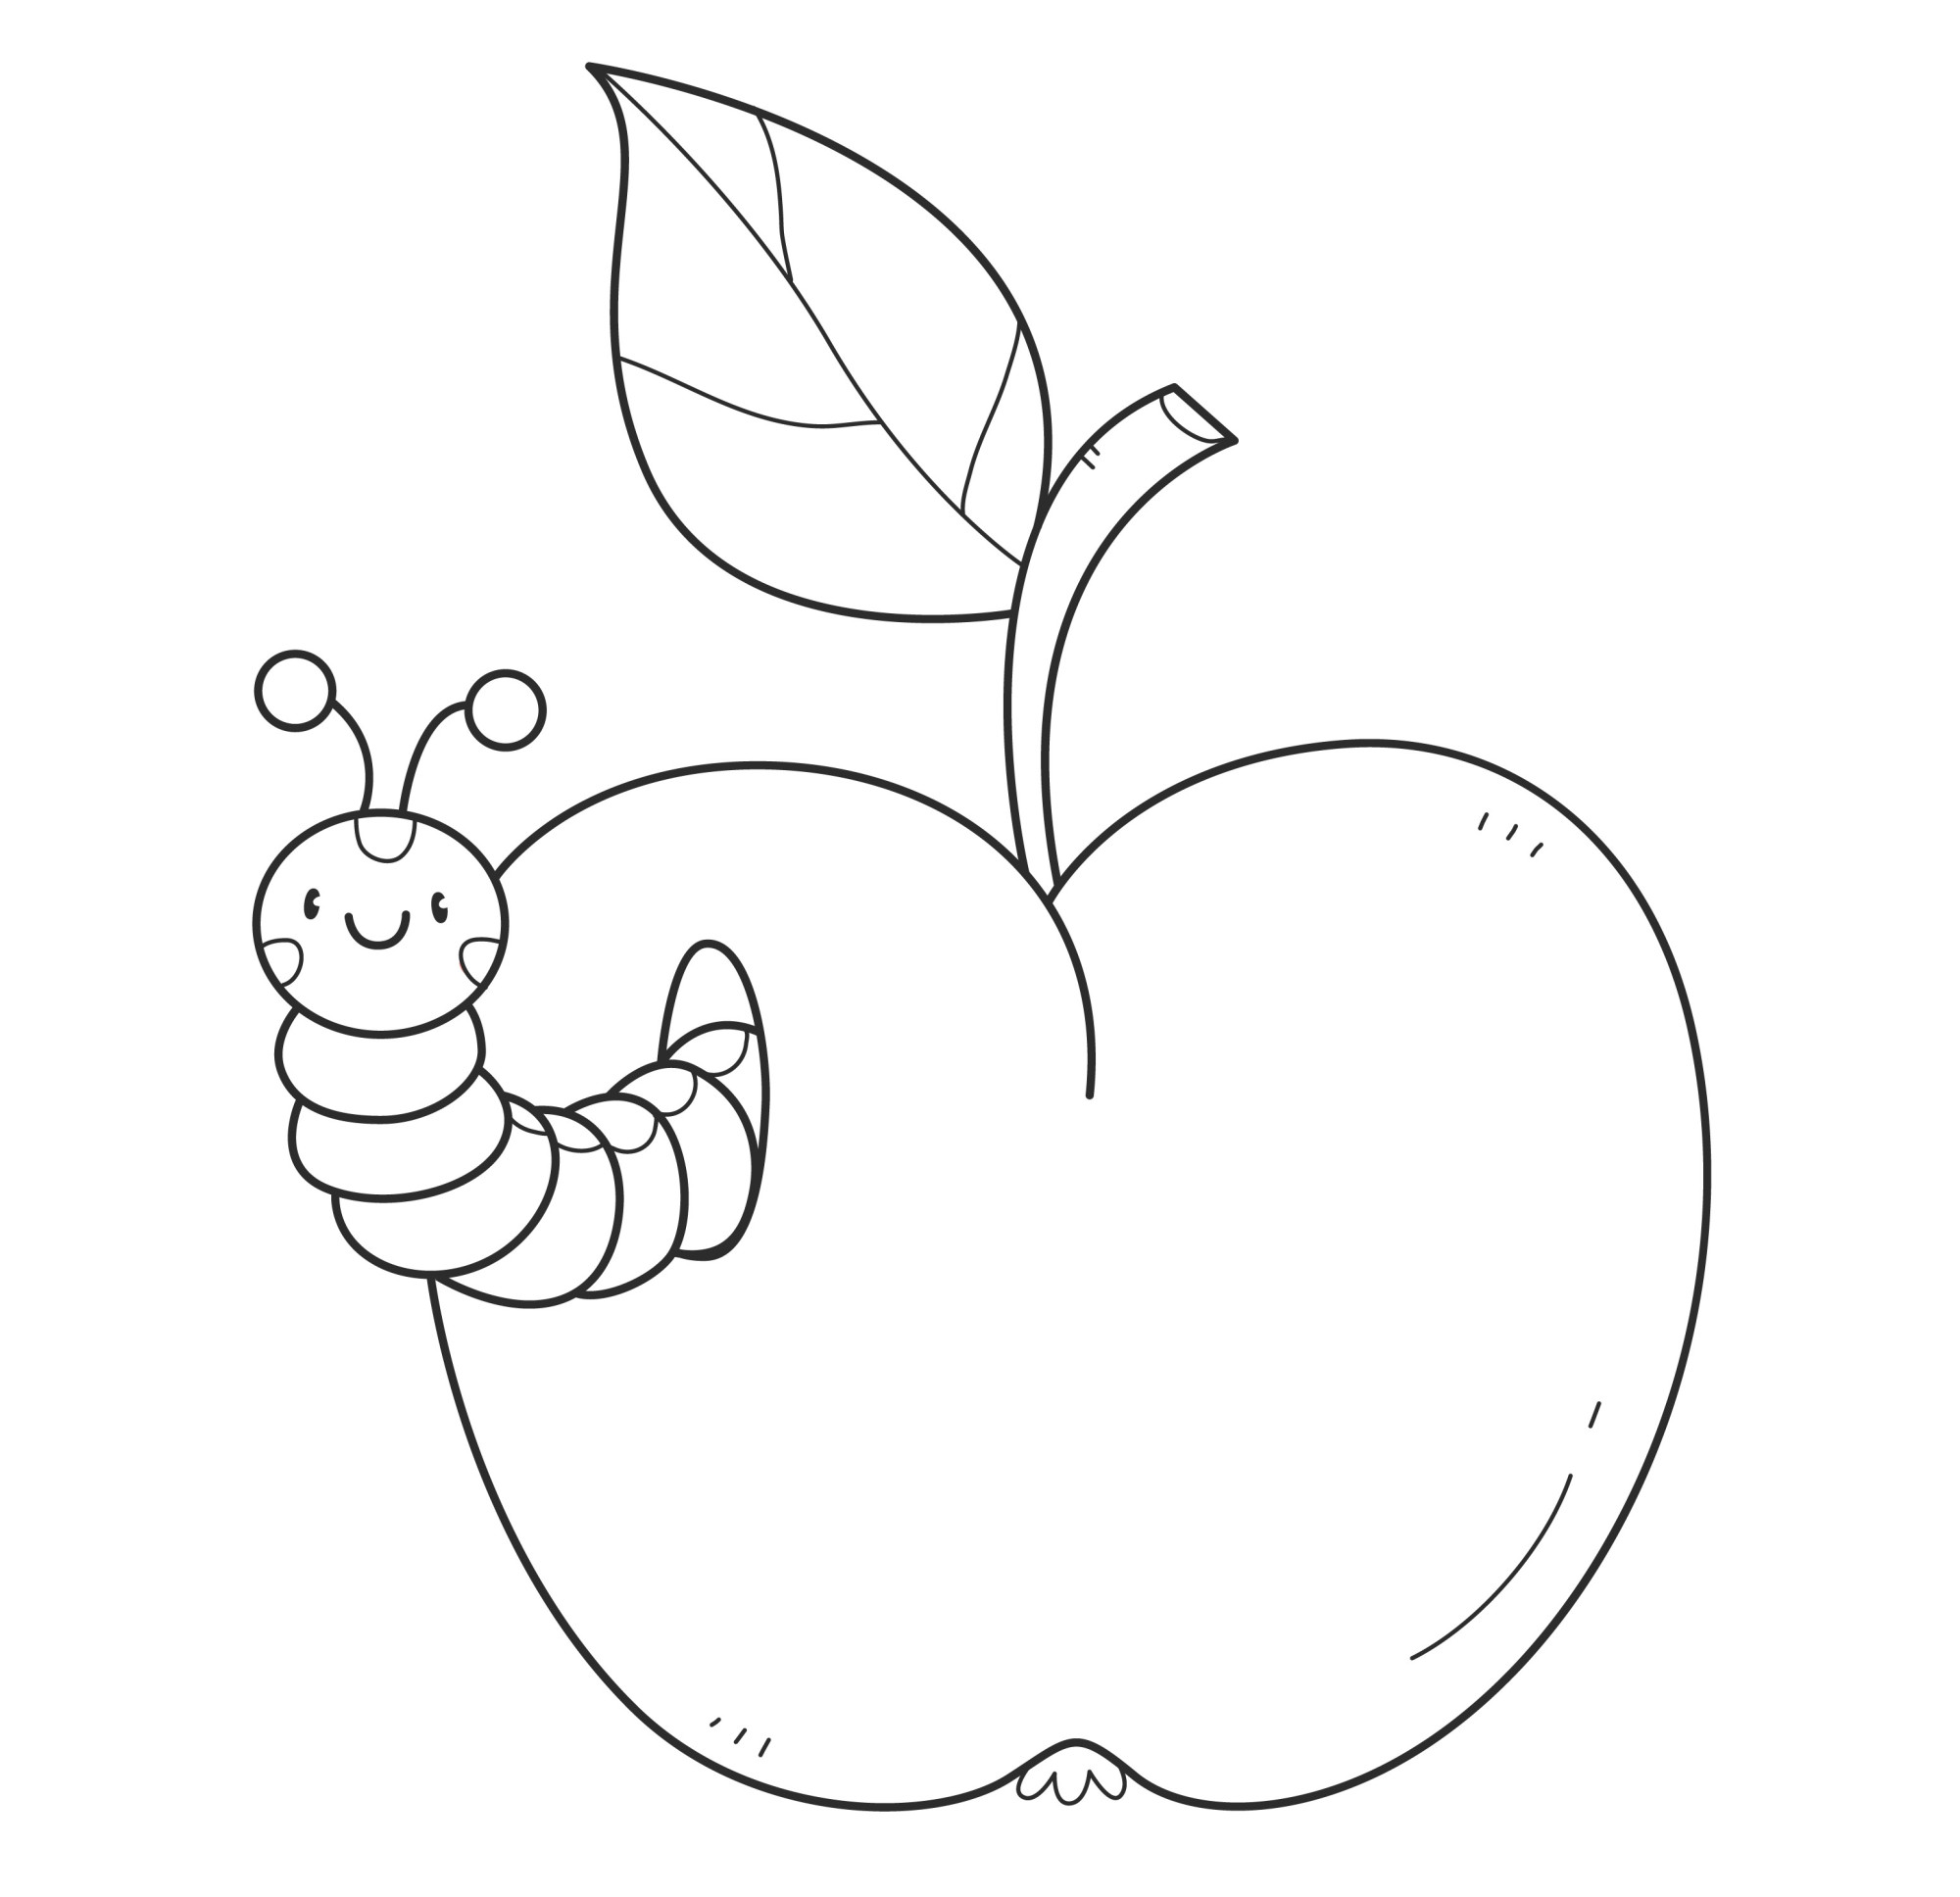 Раскраска для детей: красное яблоко с гусеницей